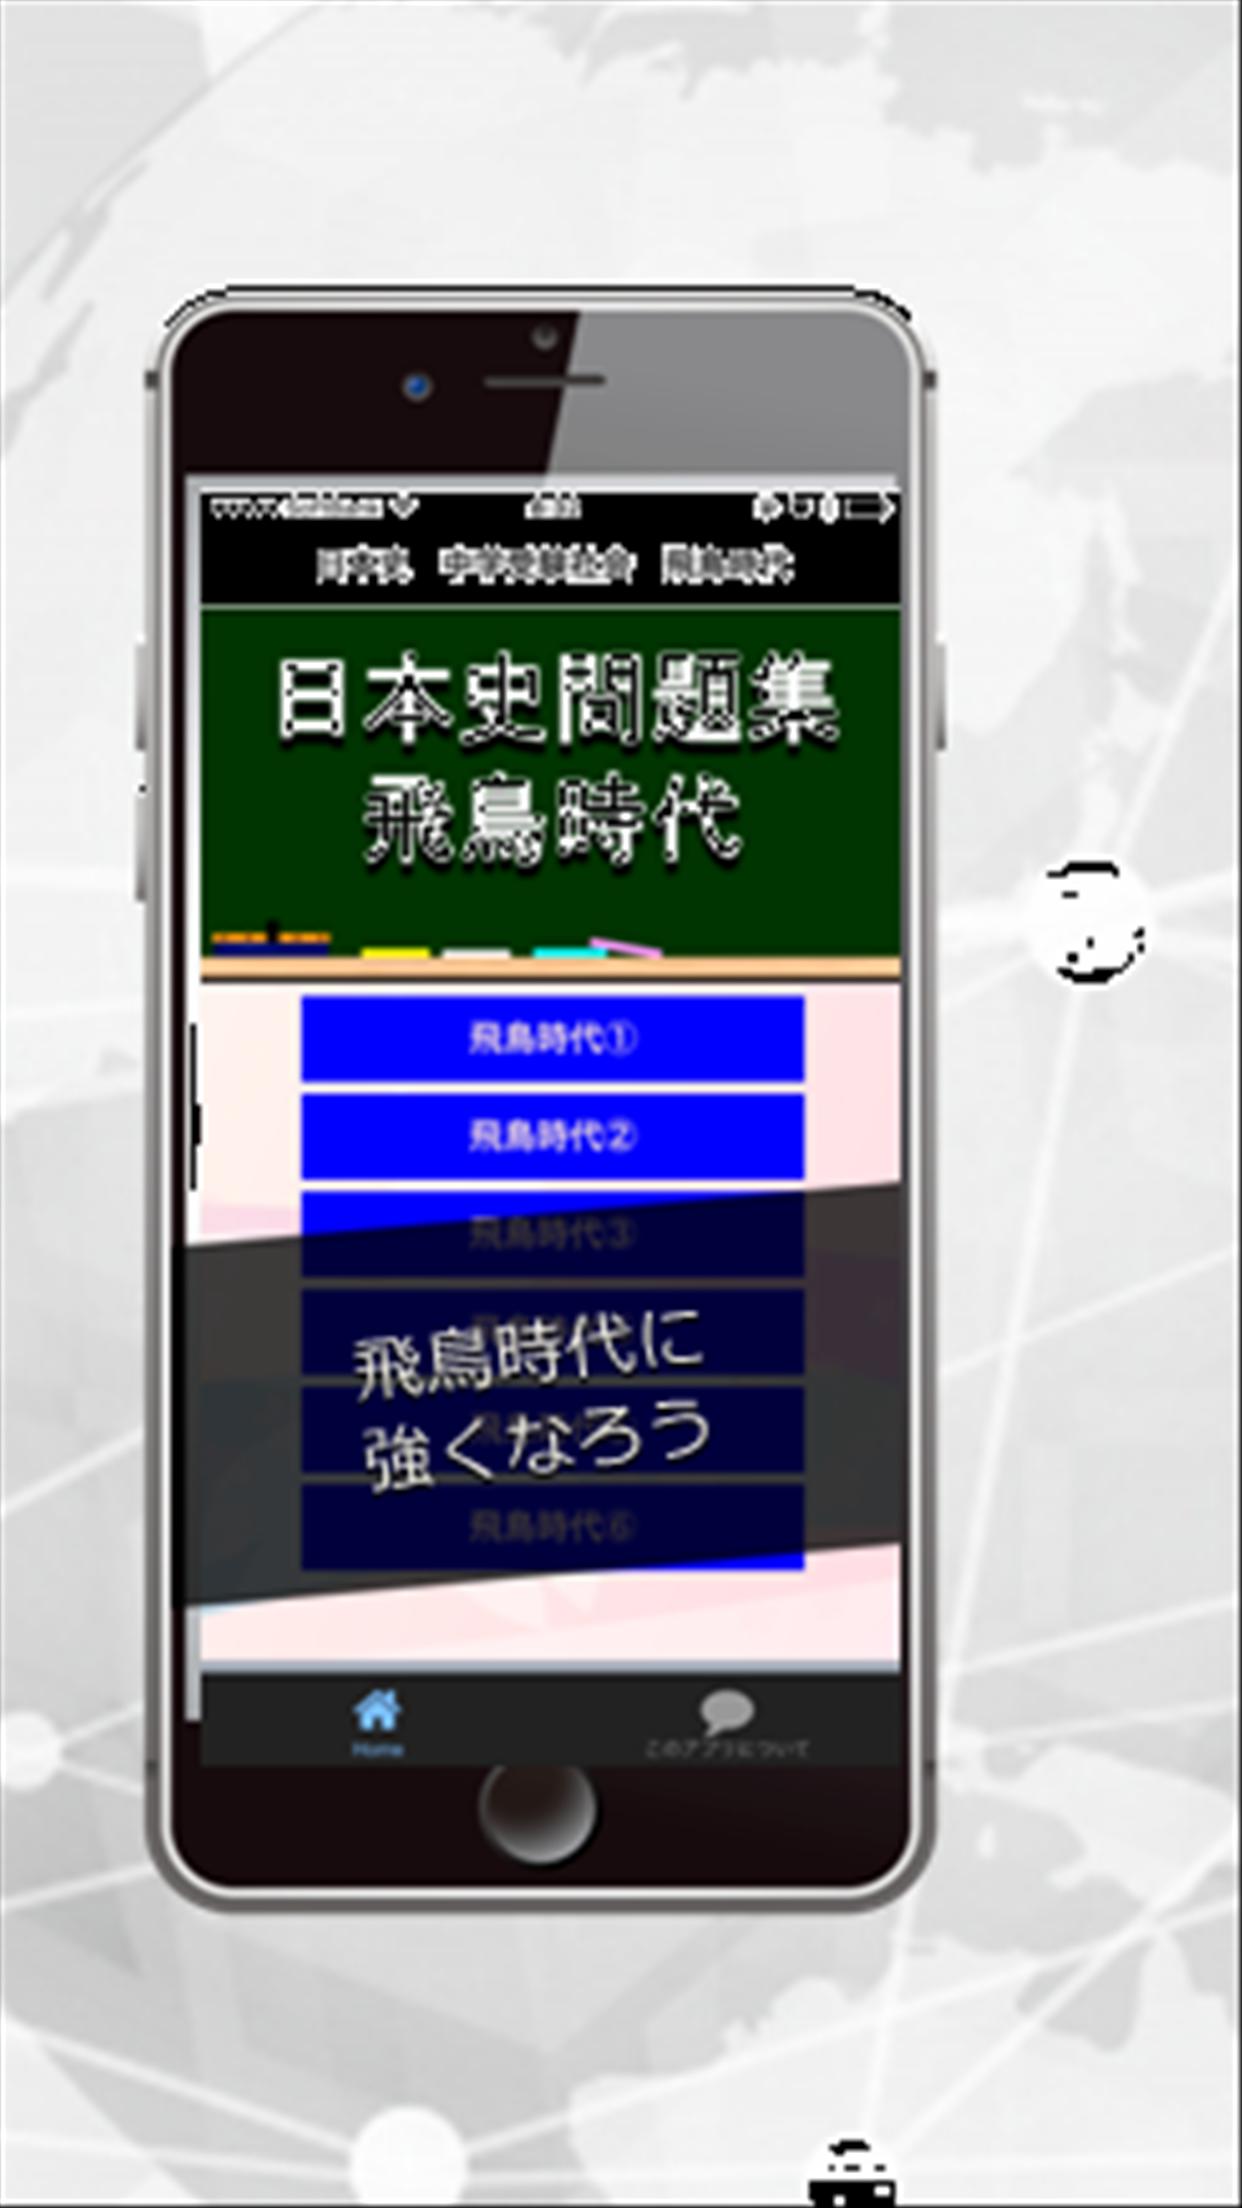 中学受験社会 日本史問題集ー飛鳥 奈良 平安時代ー普段の学習や期末テスト対策トレーニング For Android Apk Download